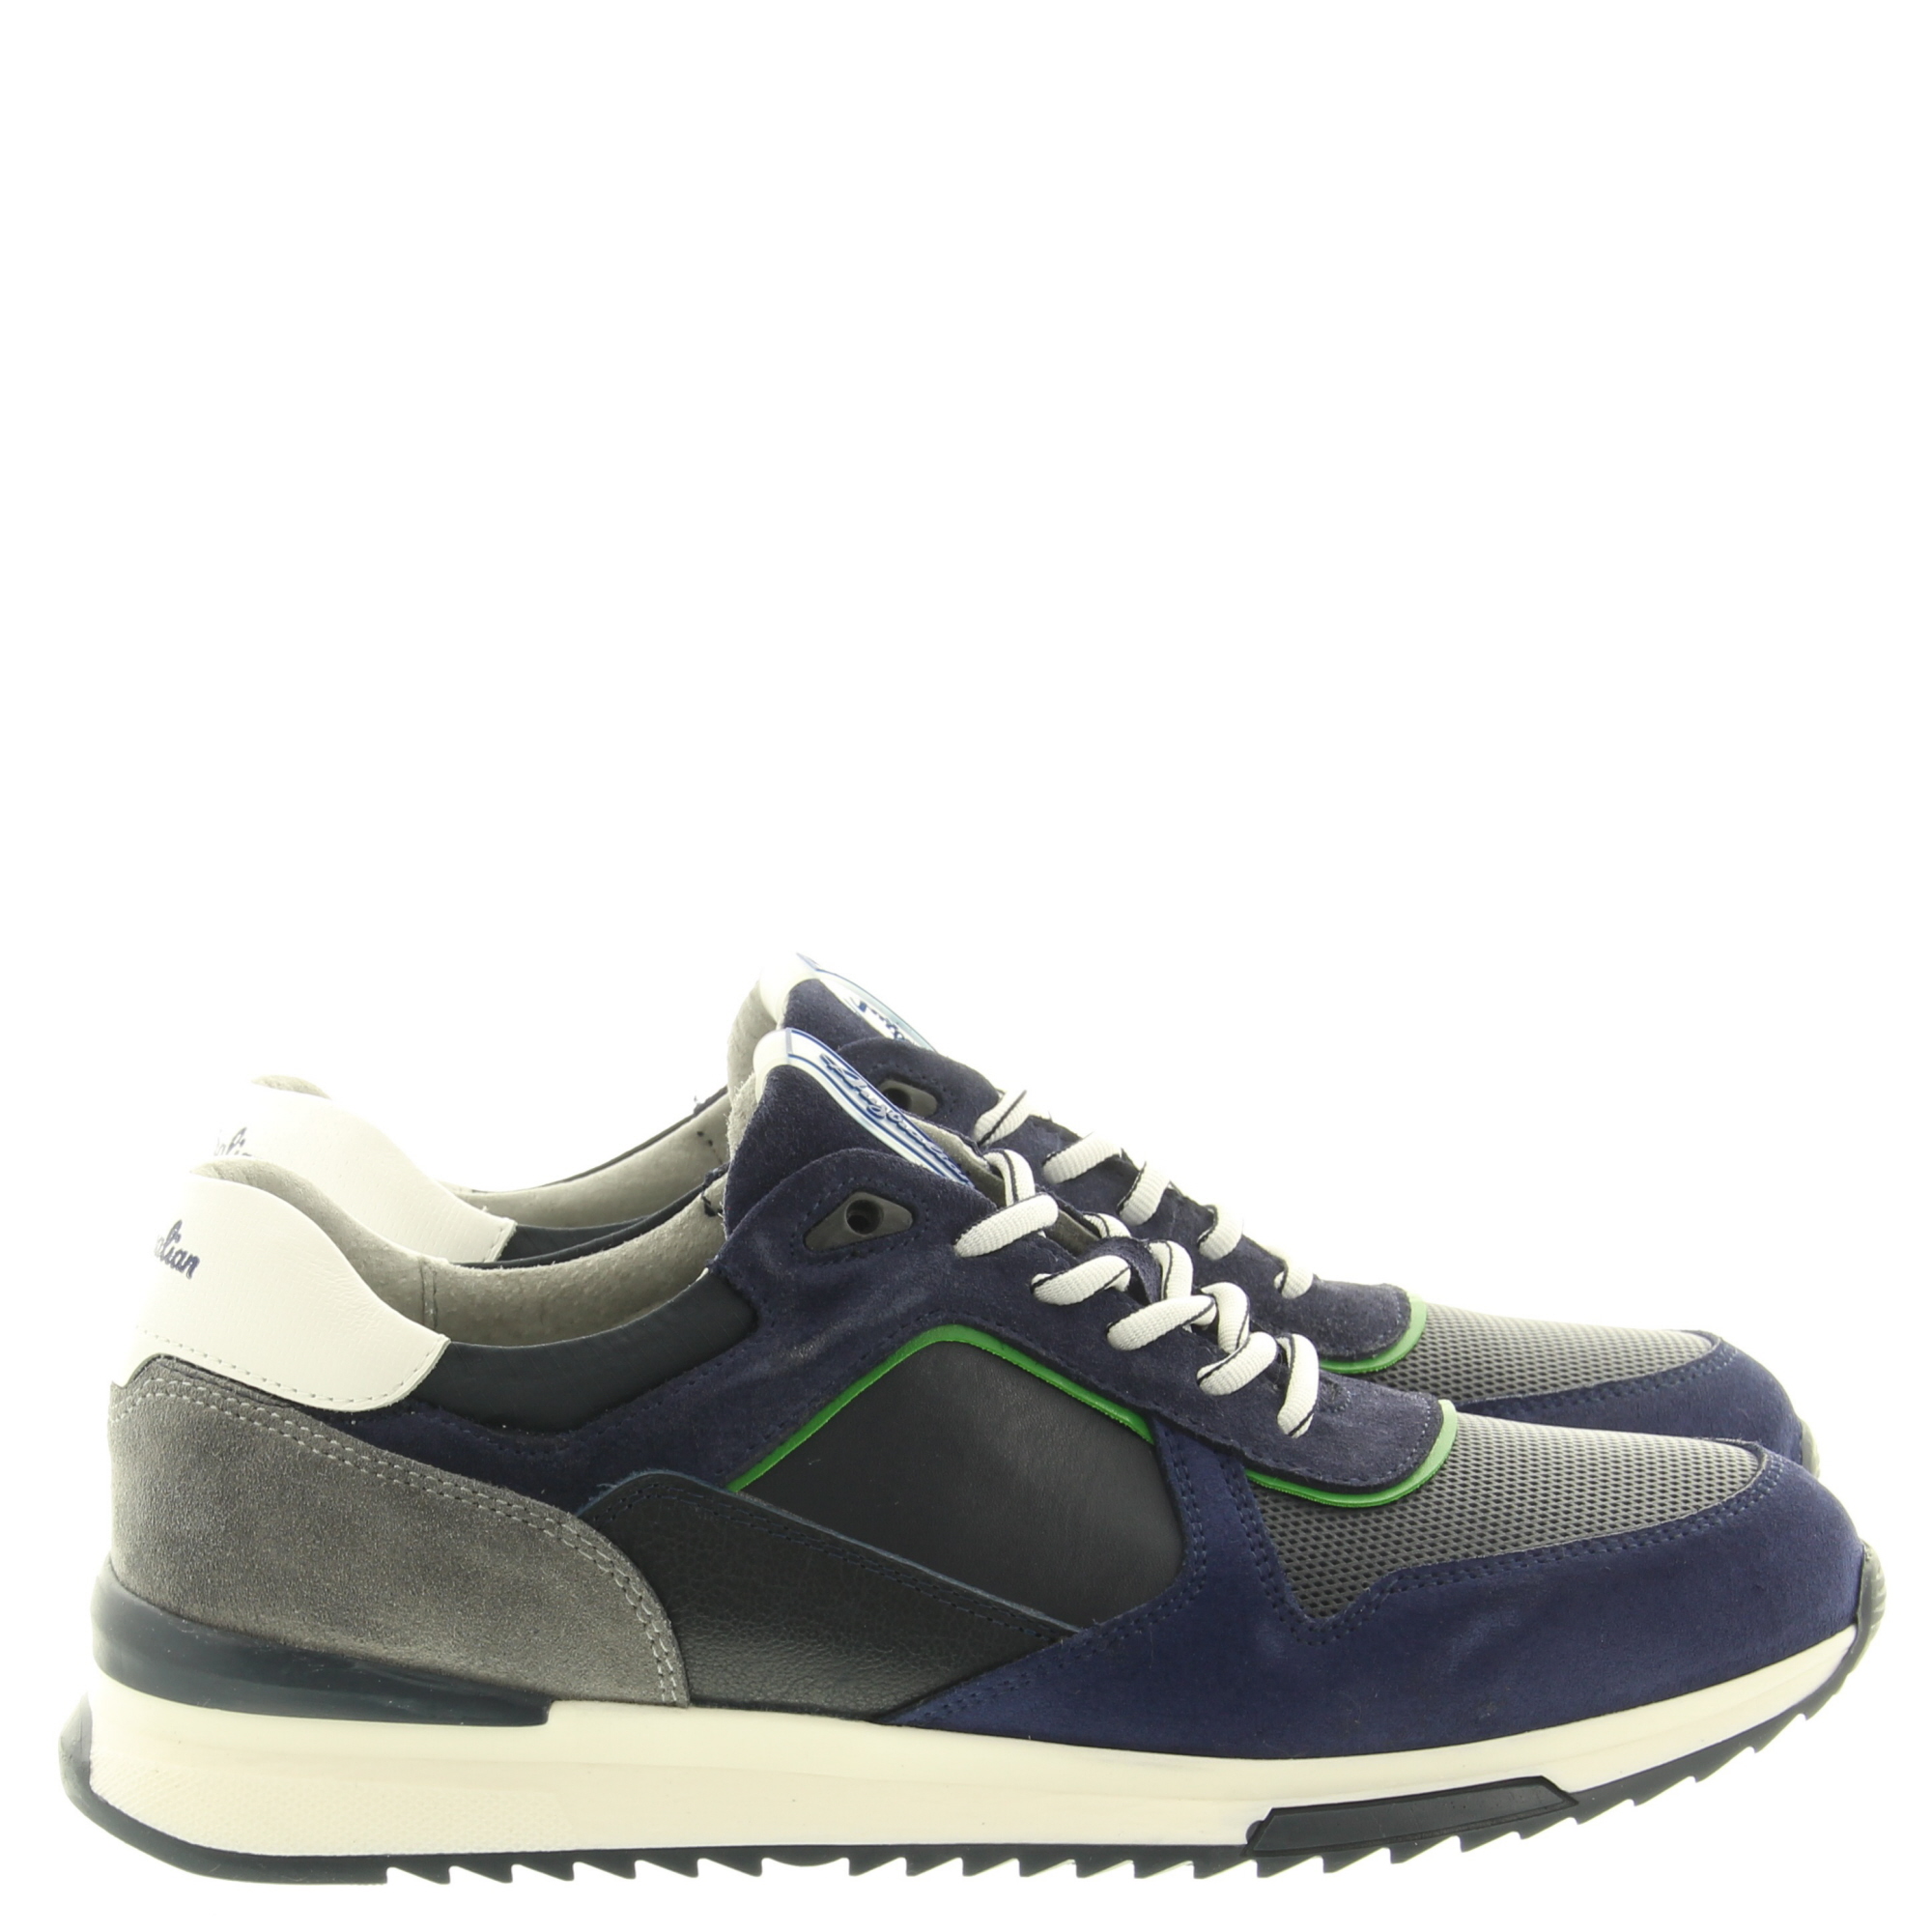 Australian Footwear Frederico 15.1543.01 SIJ Blue Grey Green